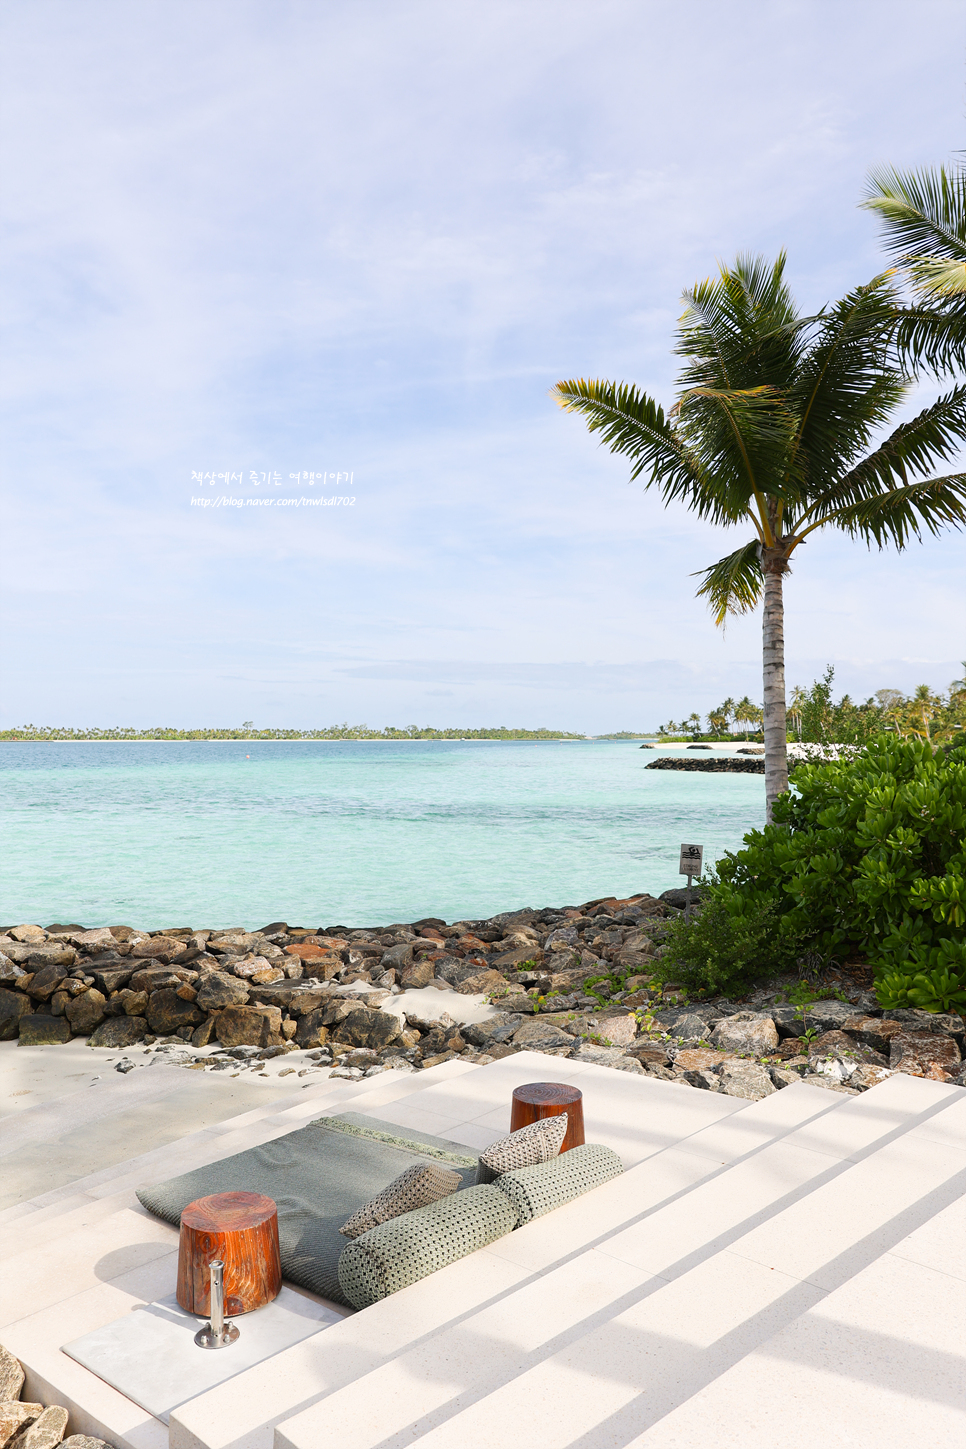 몰디브 럭셔리 신상 리조트 오버워터빌라, 비치 풀빌라 The Ritz-Carlton Maldives, Fari Islands